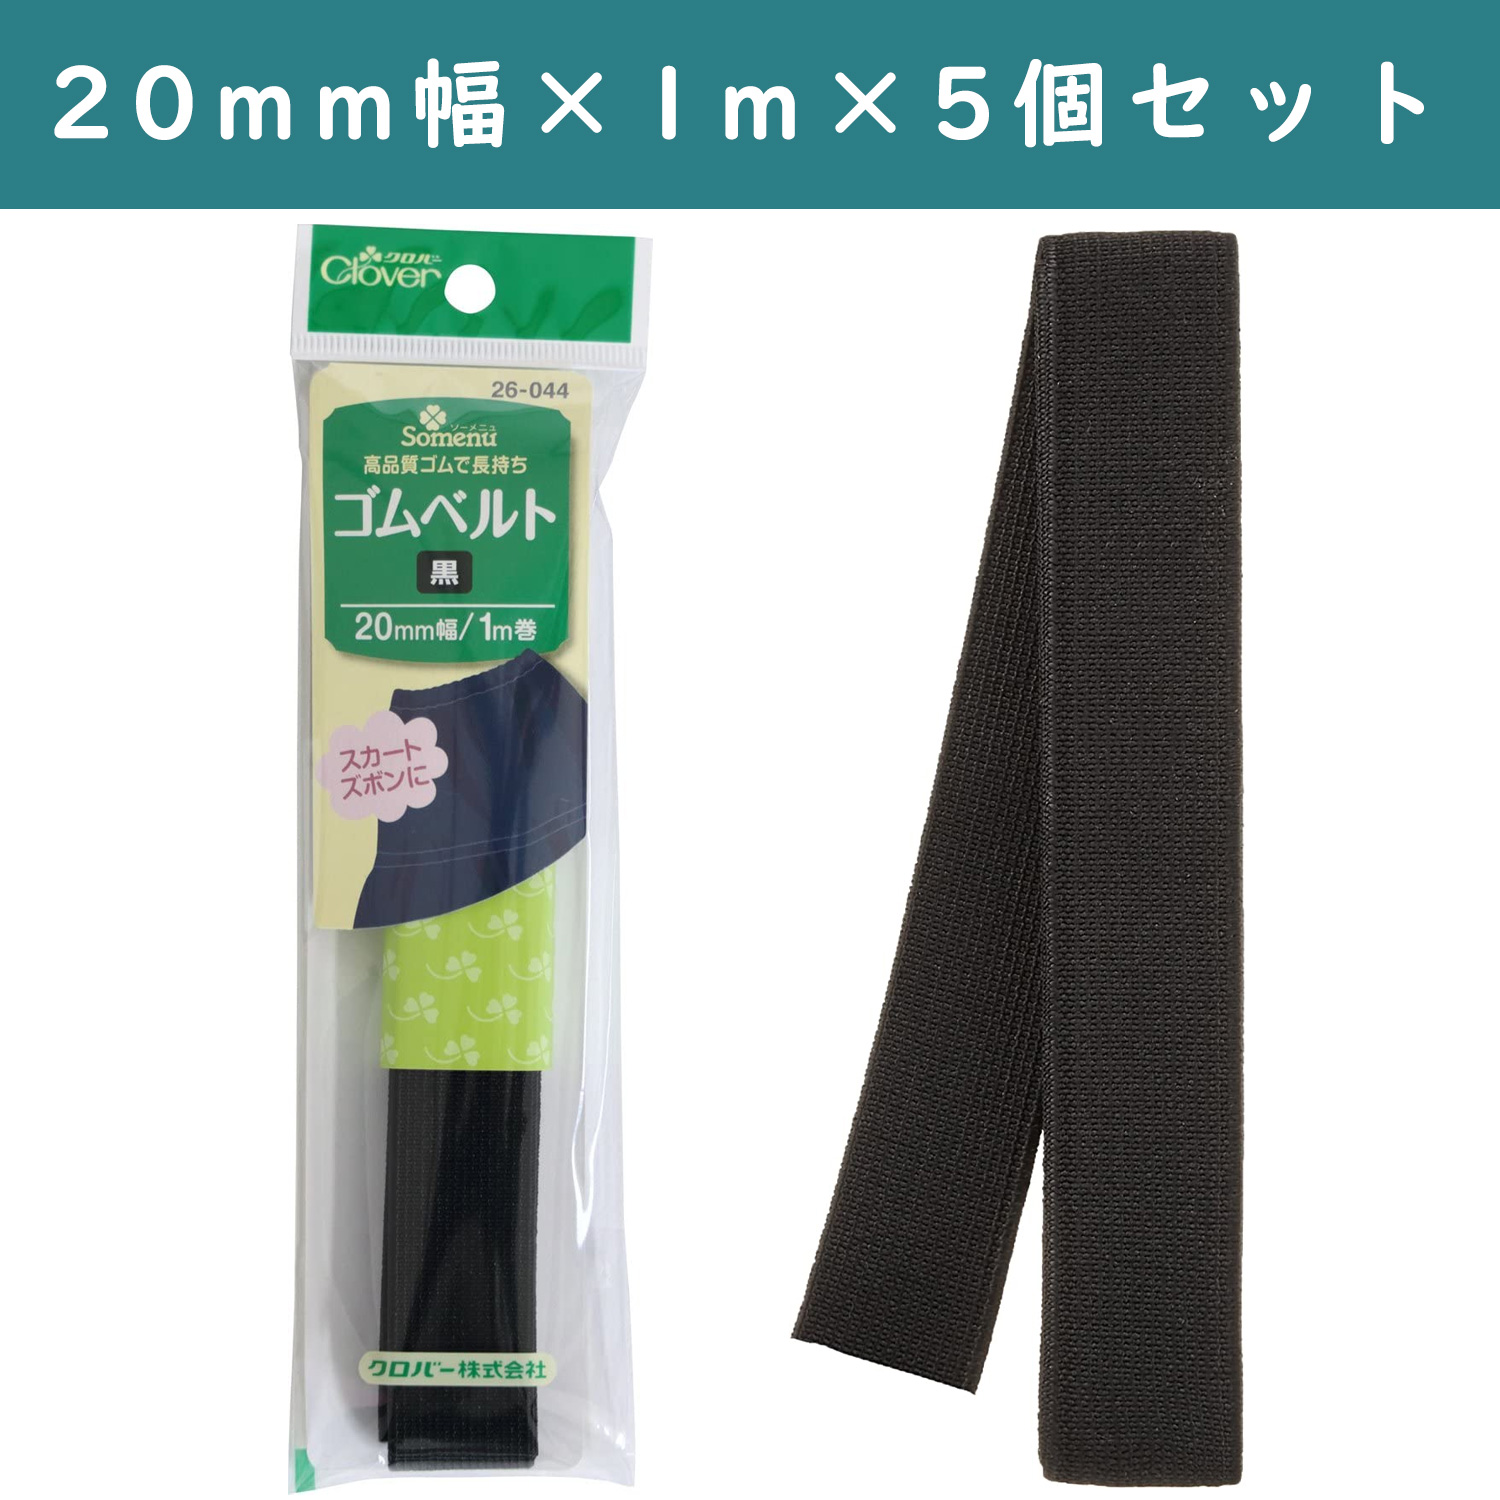 ■【5個】CL26-044-5set ゴムベルト 20mm幅 黒 ×5個 (セット)